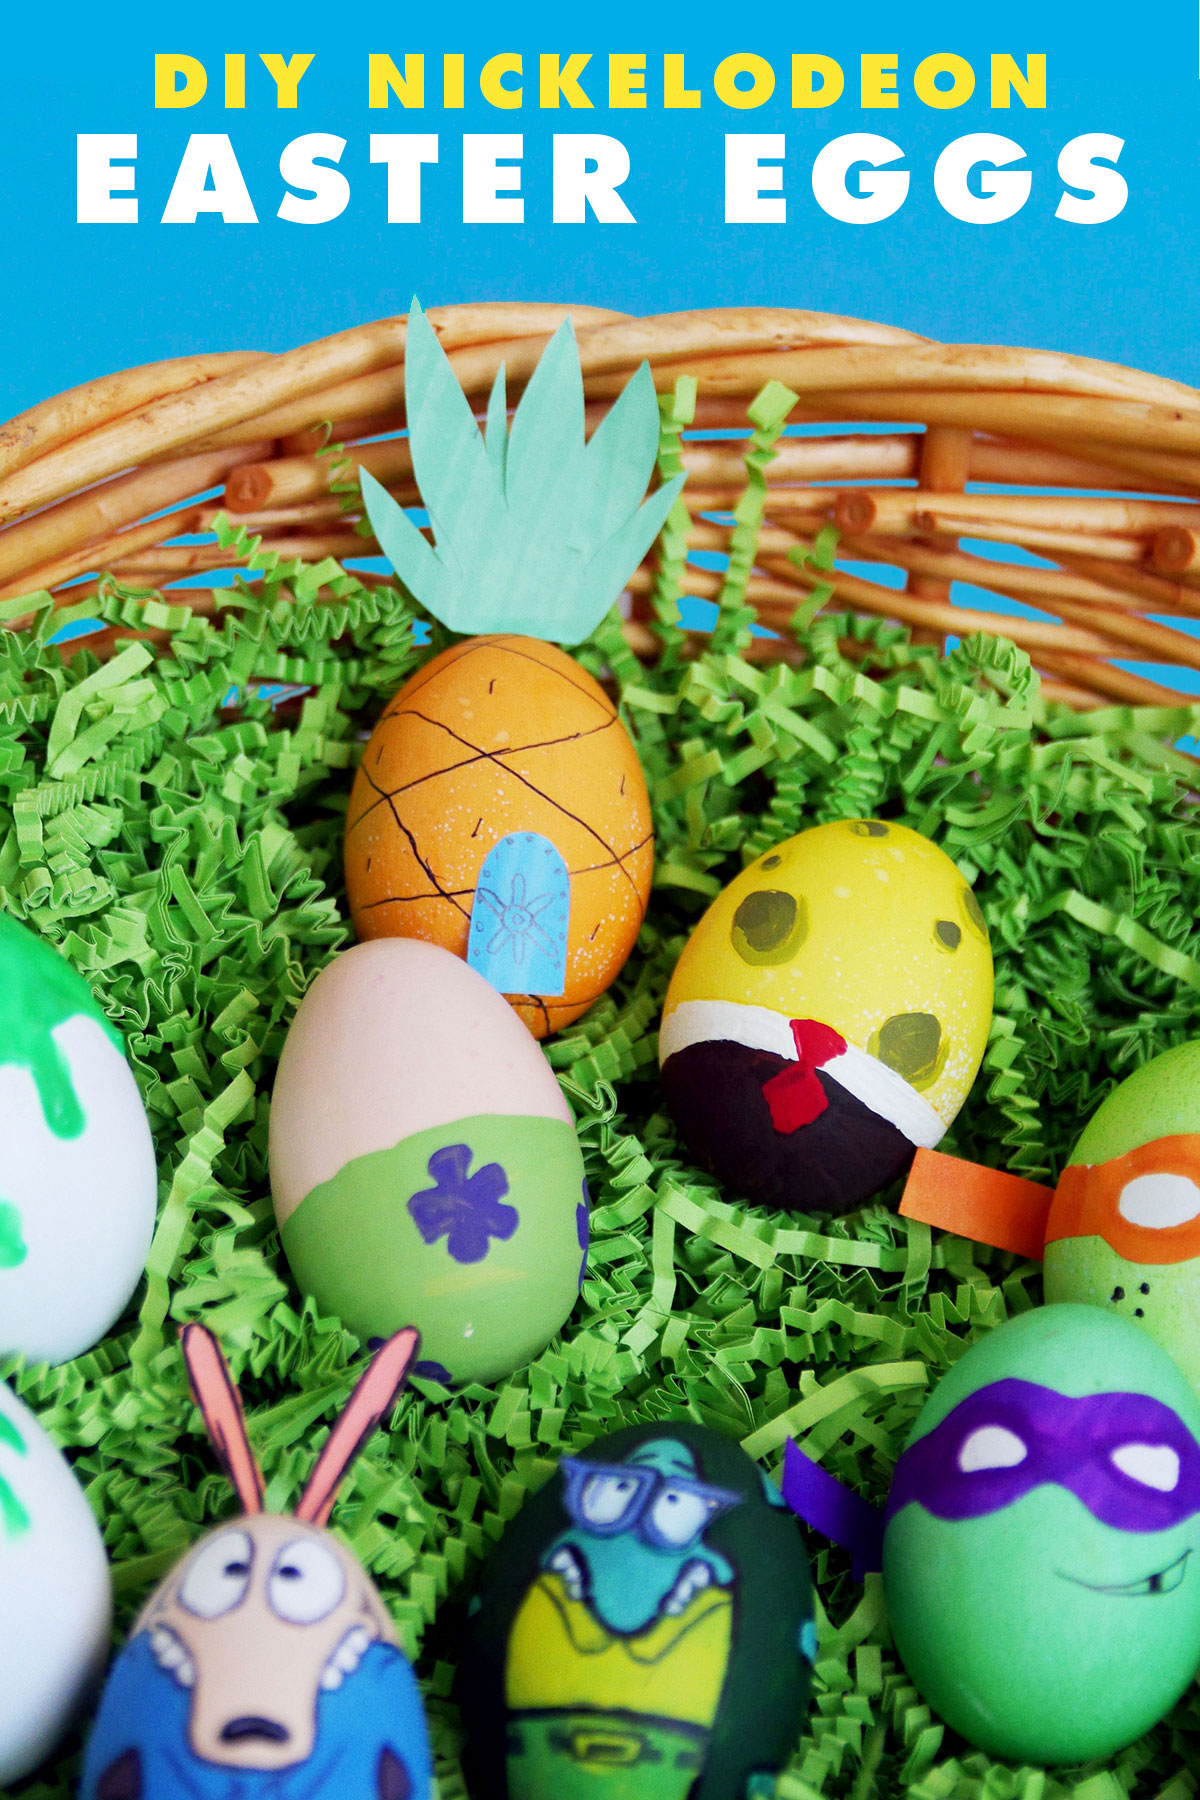 DIY Nickelodeon Easter Eggs